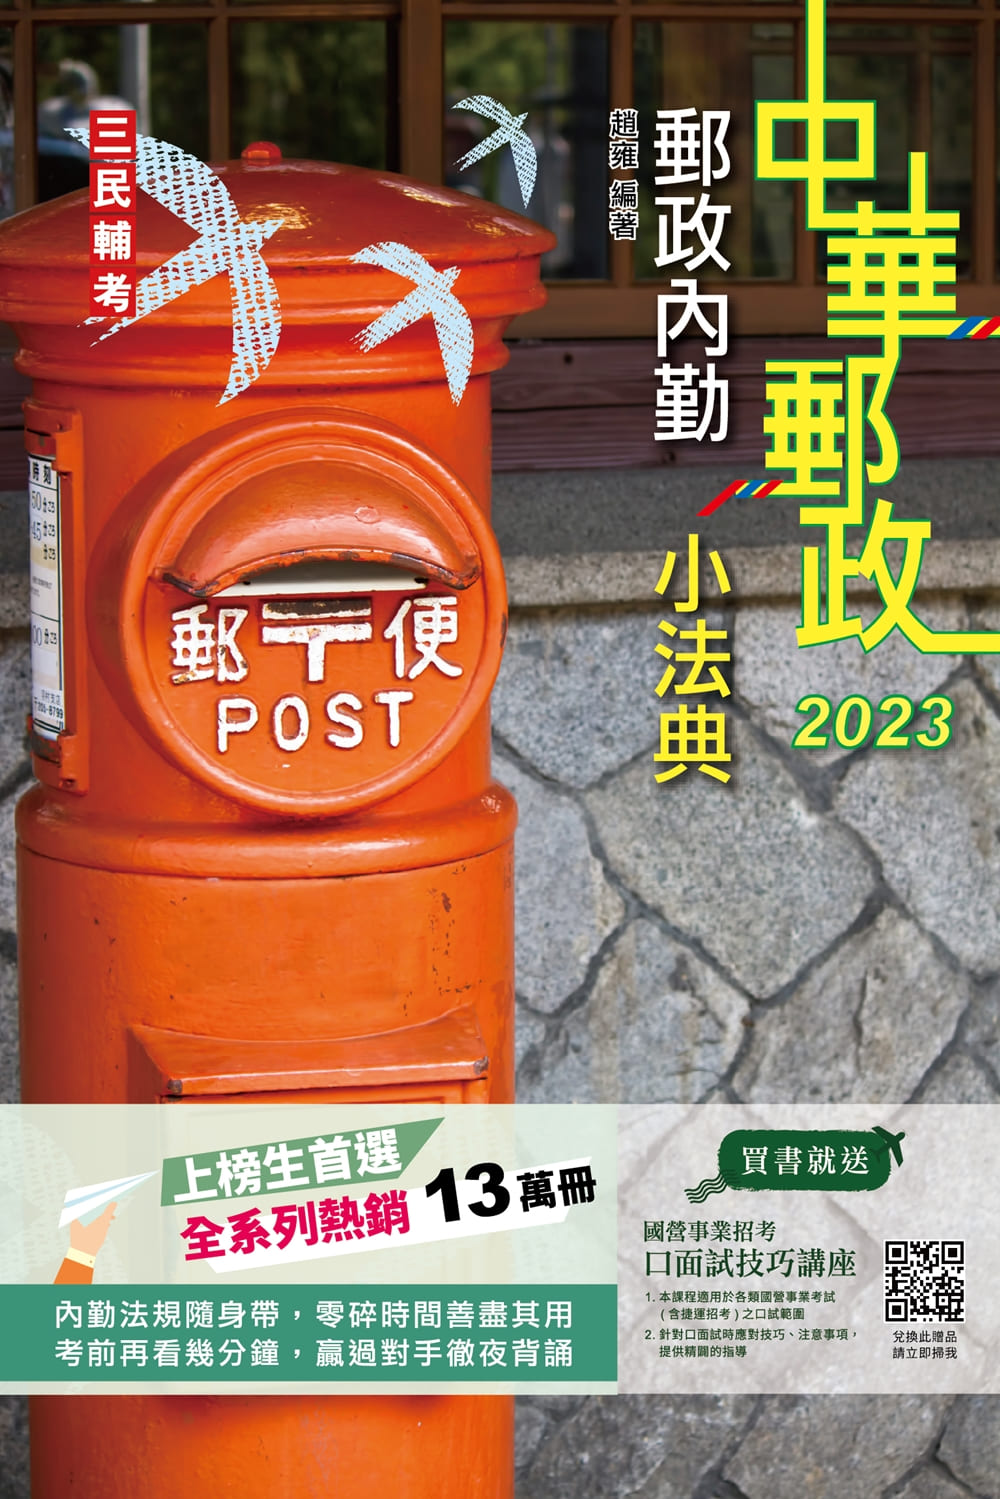 商品圖片 2023郵政內勤小法典